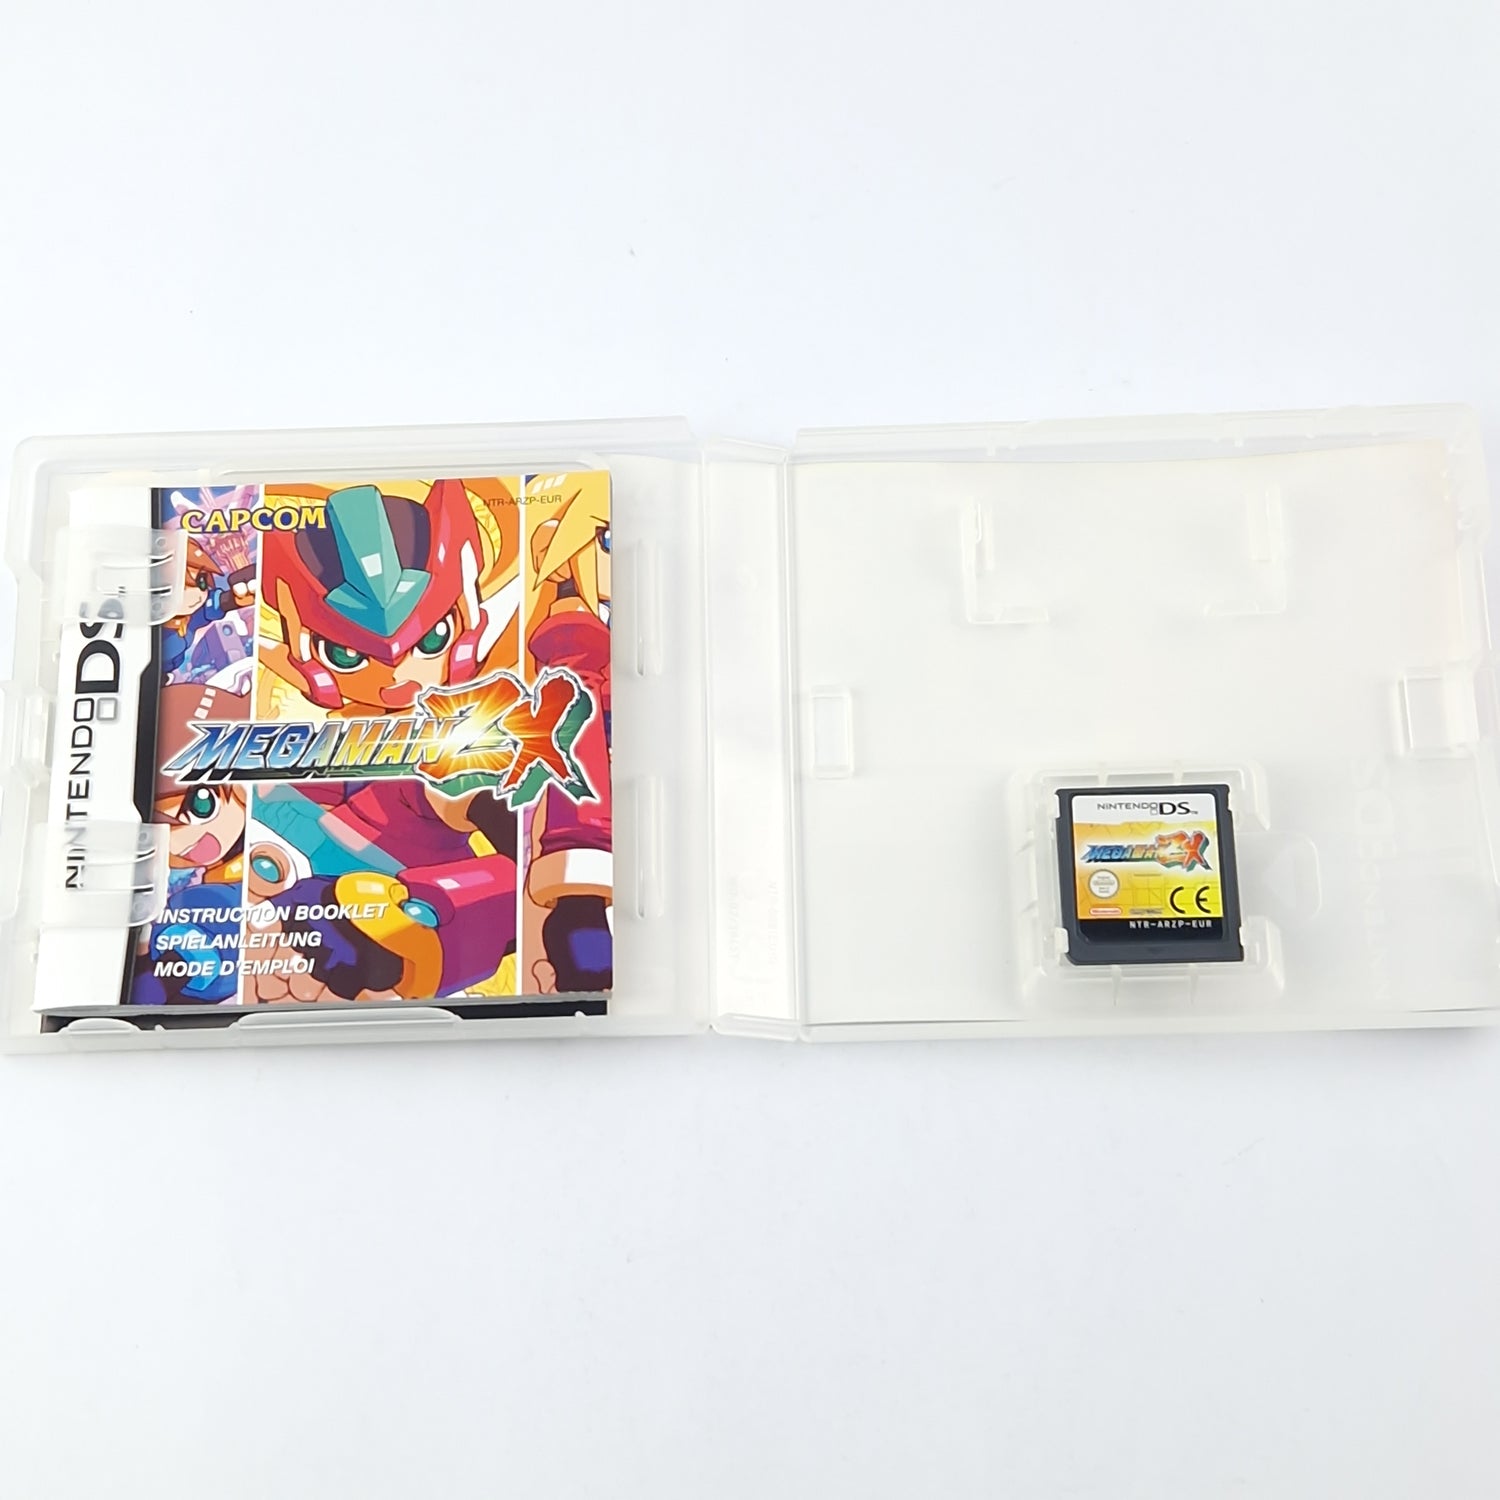 Nintendo DS Spiel : Mega Man ZX - Modul Anleitung OVP cib / Capcom Megaman